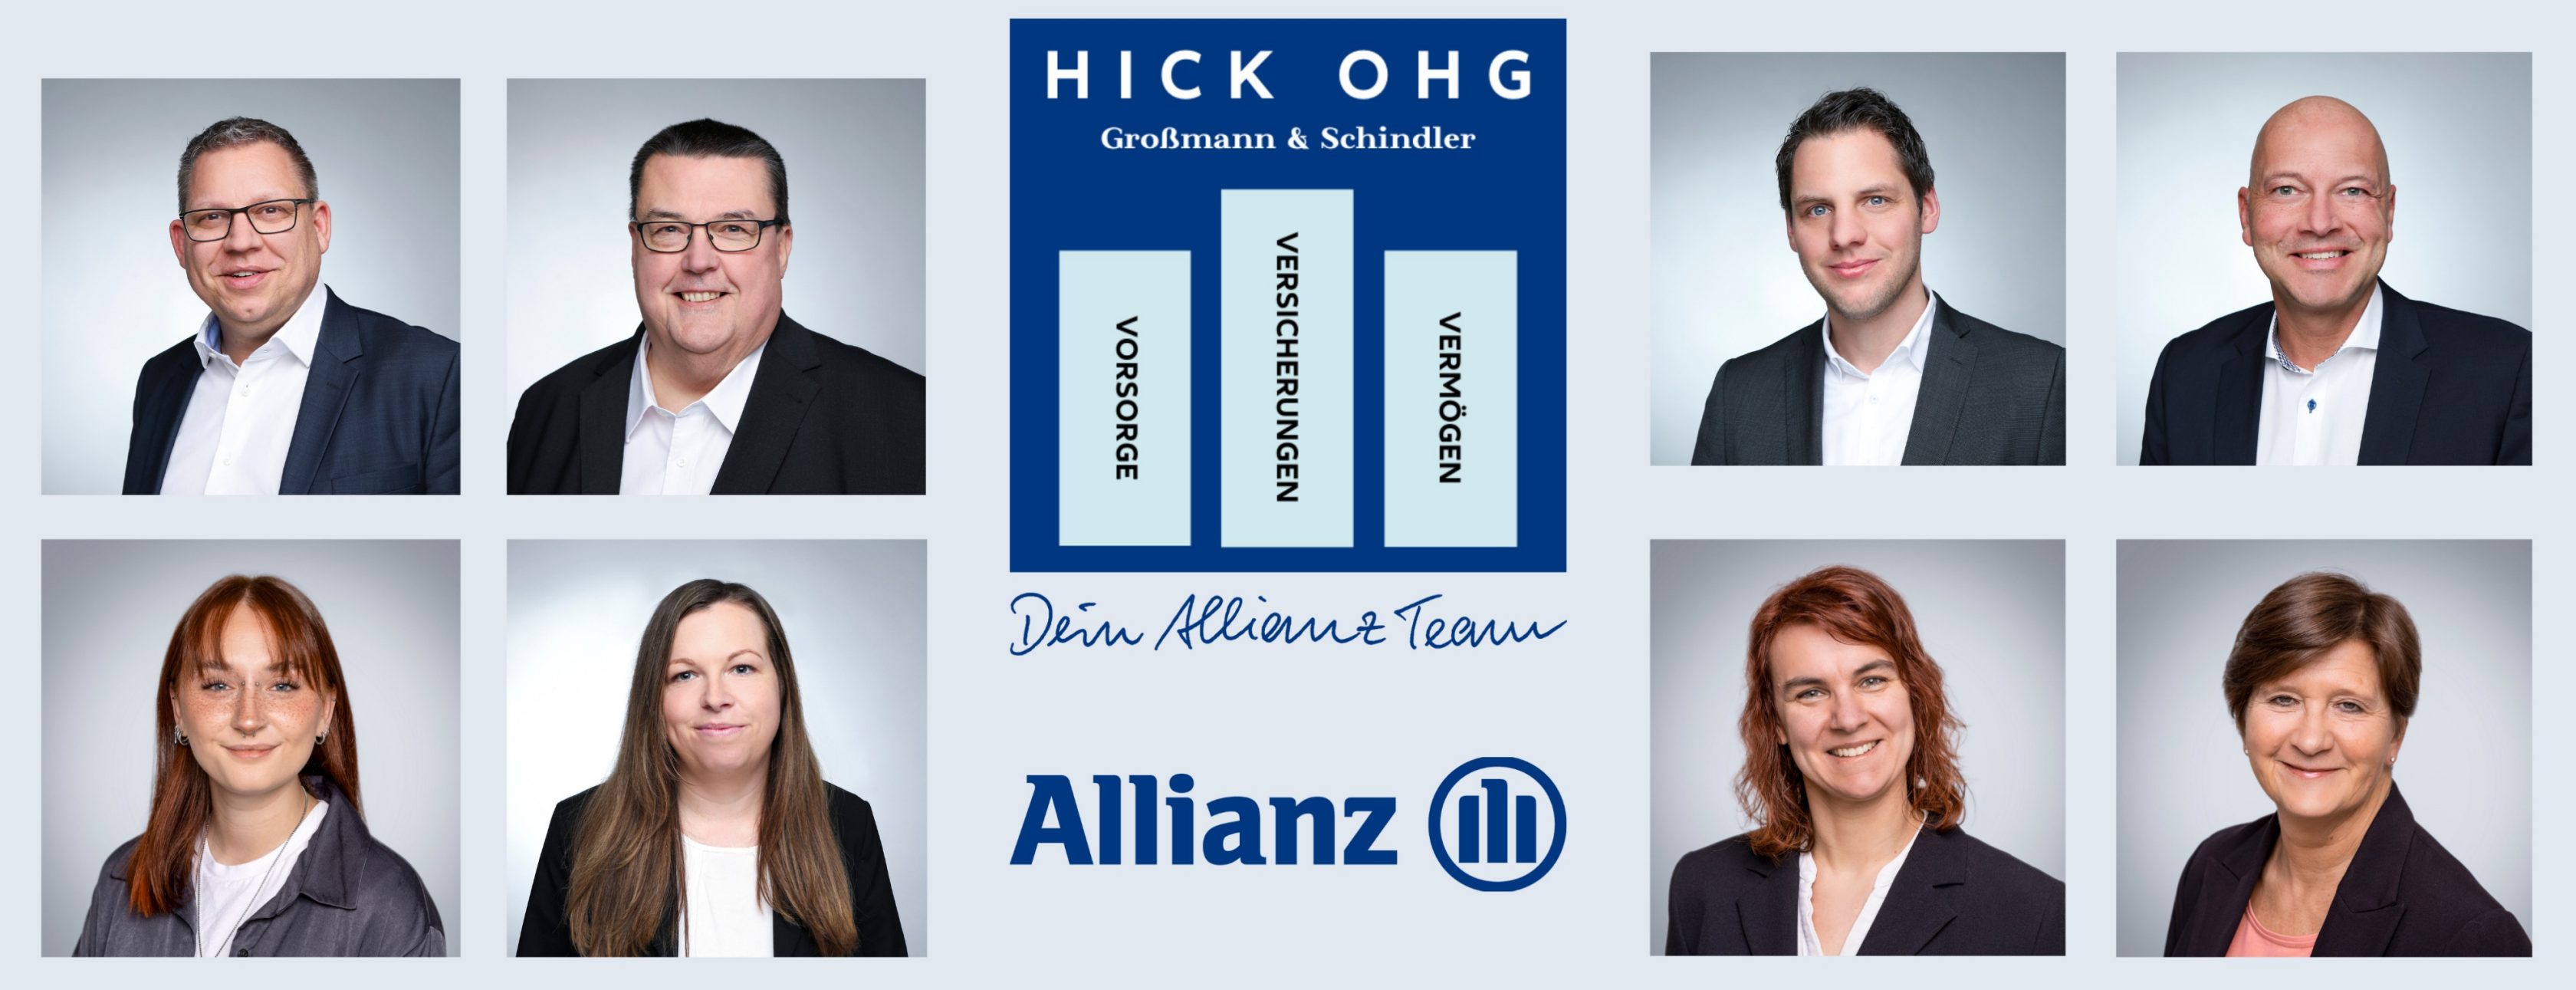 Allianz Versicherung Hick OHG Inh. Jörg Großmann und Uwe Schindler Hof - Herzlich Willkommen - Hick OHG 